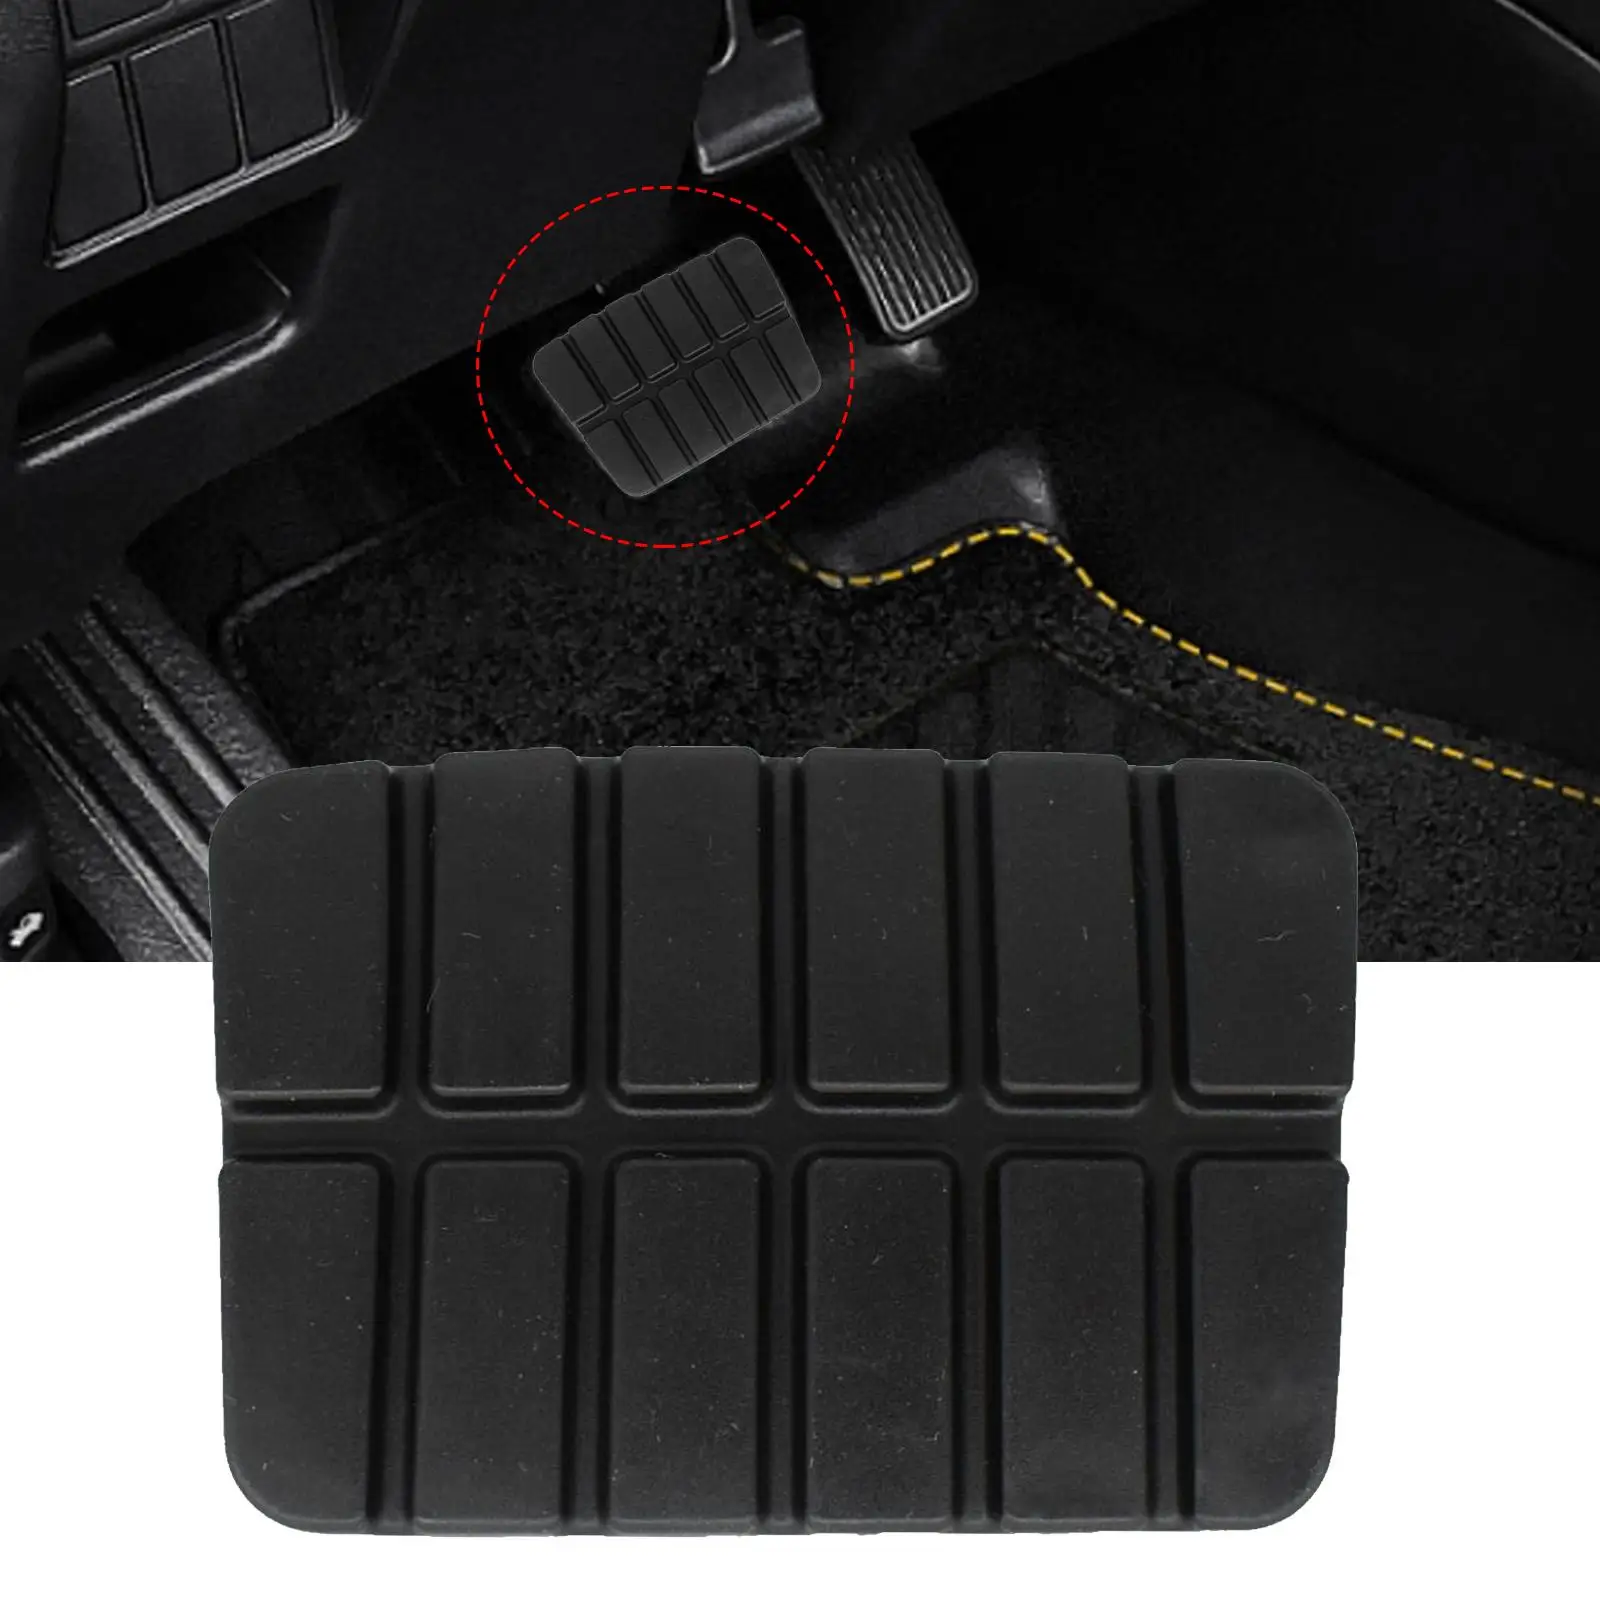 Black Brake Clutch Pedal Rubber Cover 49751-ni110 Auto Accessory Sturdy